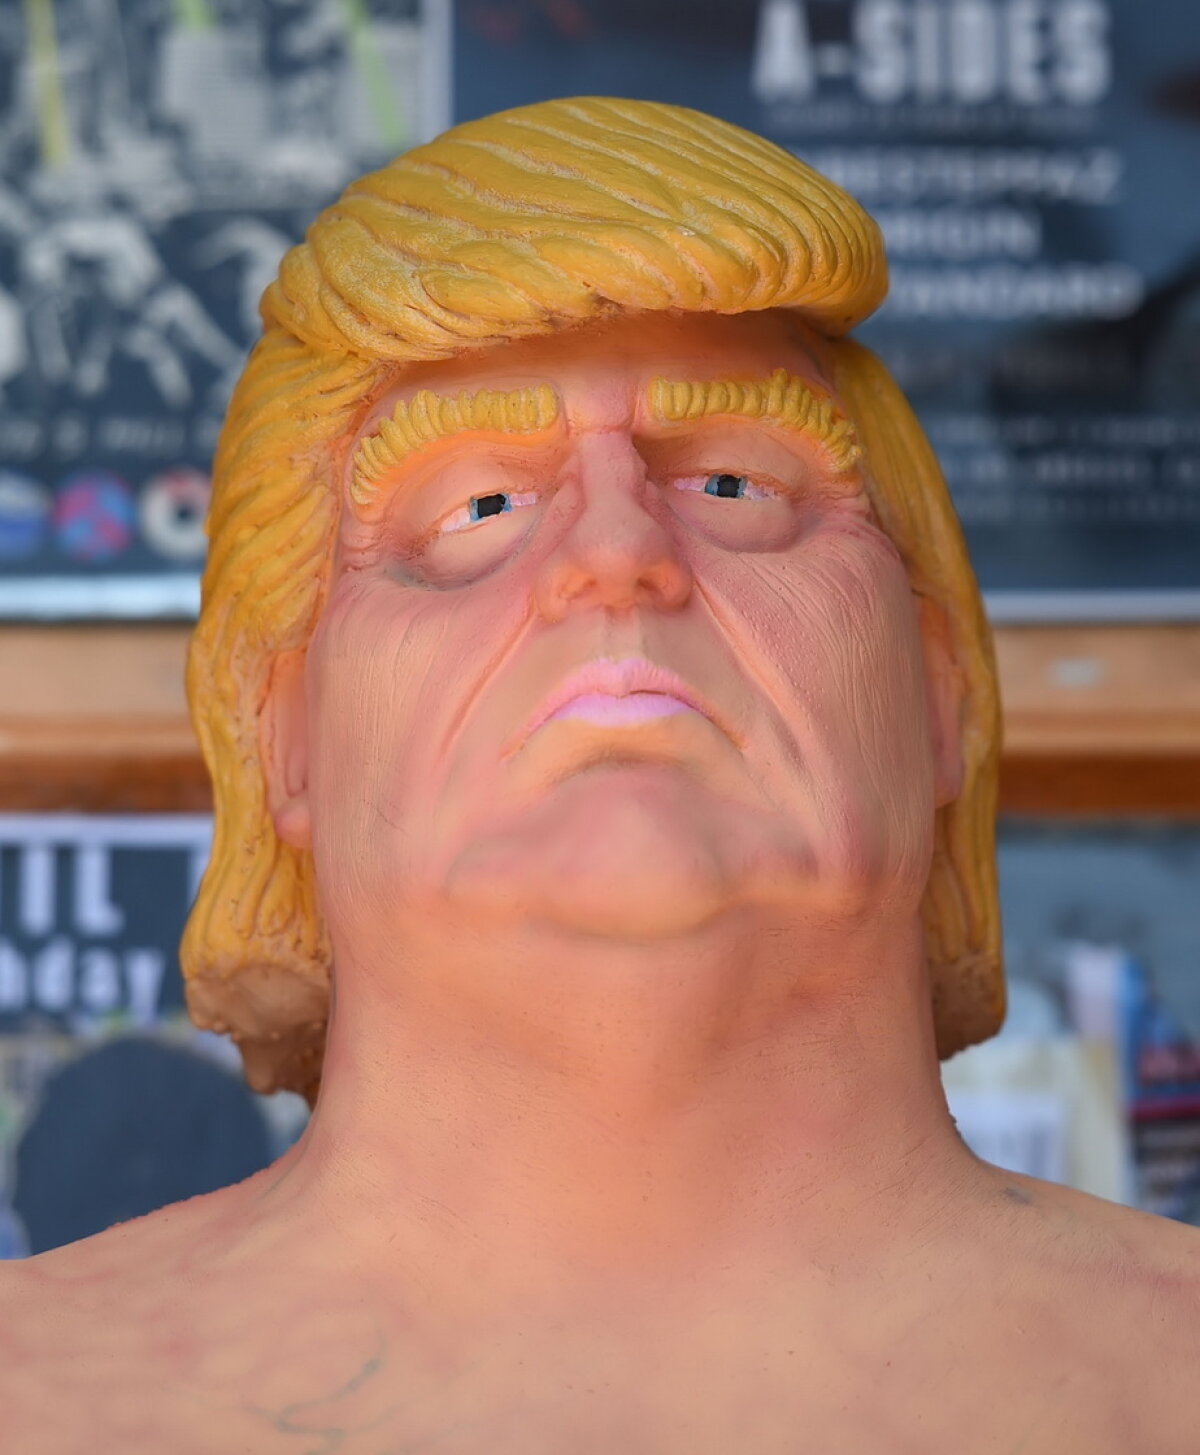 Vei râde cu lacrimi. A apărut statuia cu Donald Trump dezbrăcat